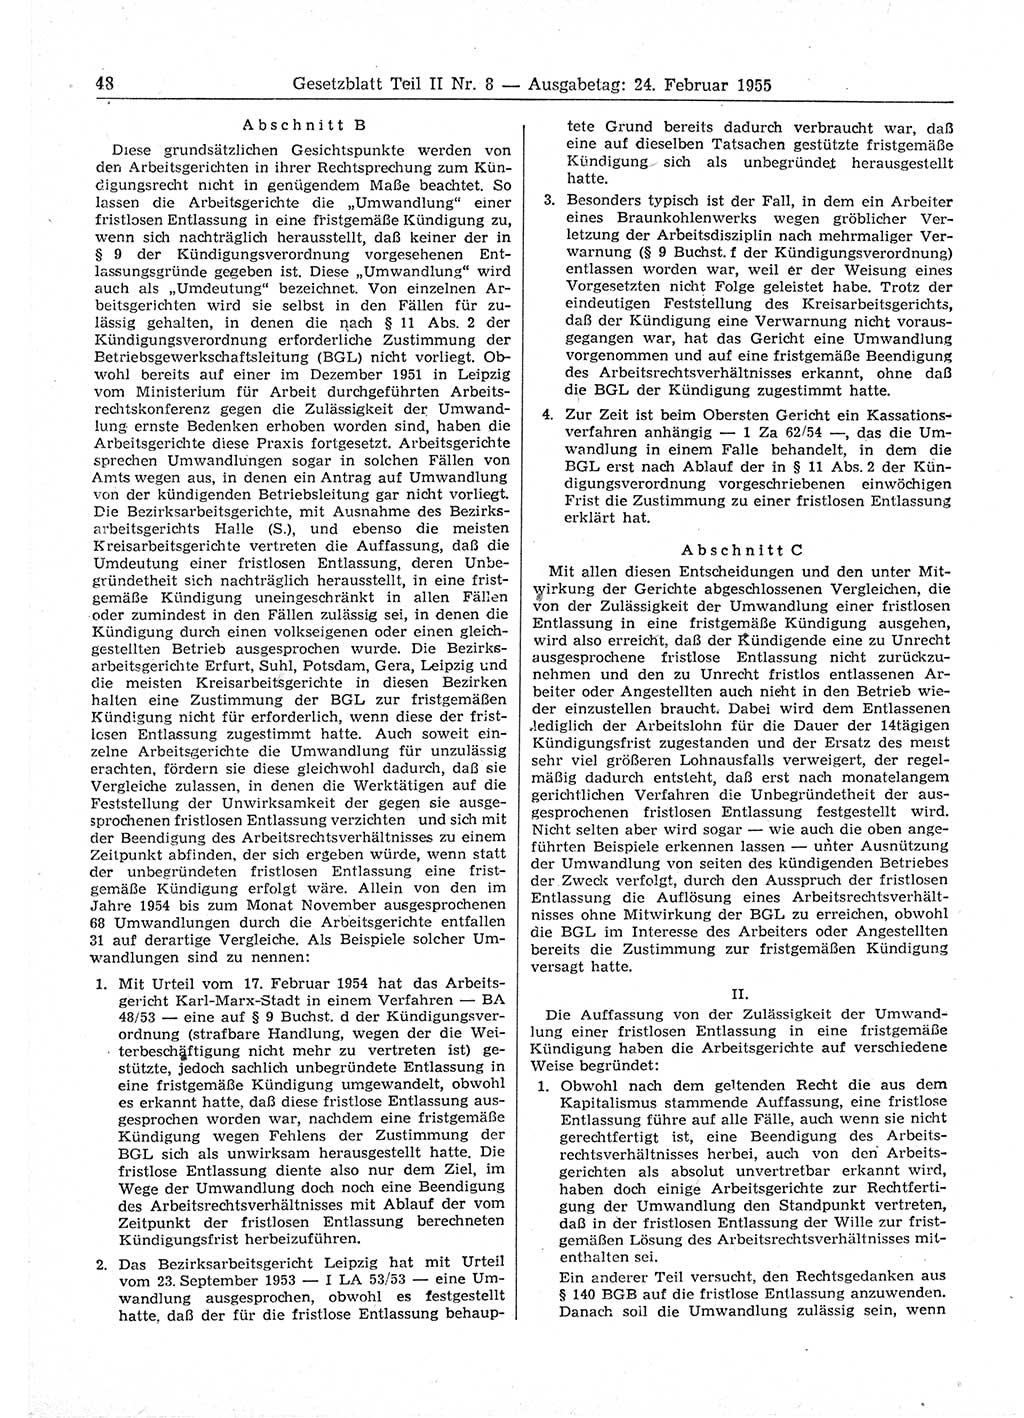 Gesetzblatt (GBl.) der Deutschen Demokratischen Republik (DDR) Teil ⅠⅠ 1955, Seite 48 (GBl. DDR ⅠⅠ 1955, S. 48)